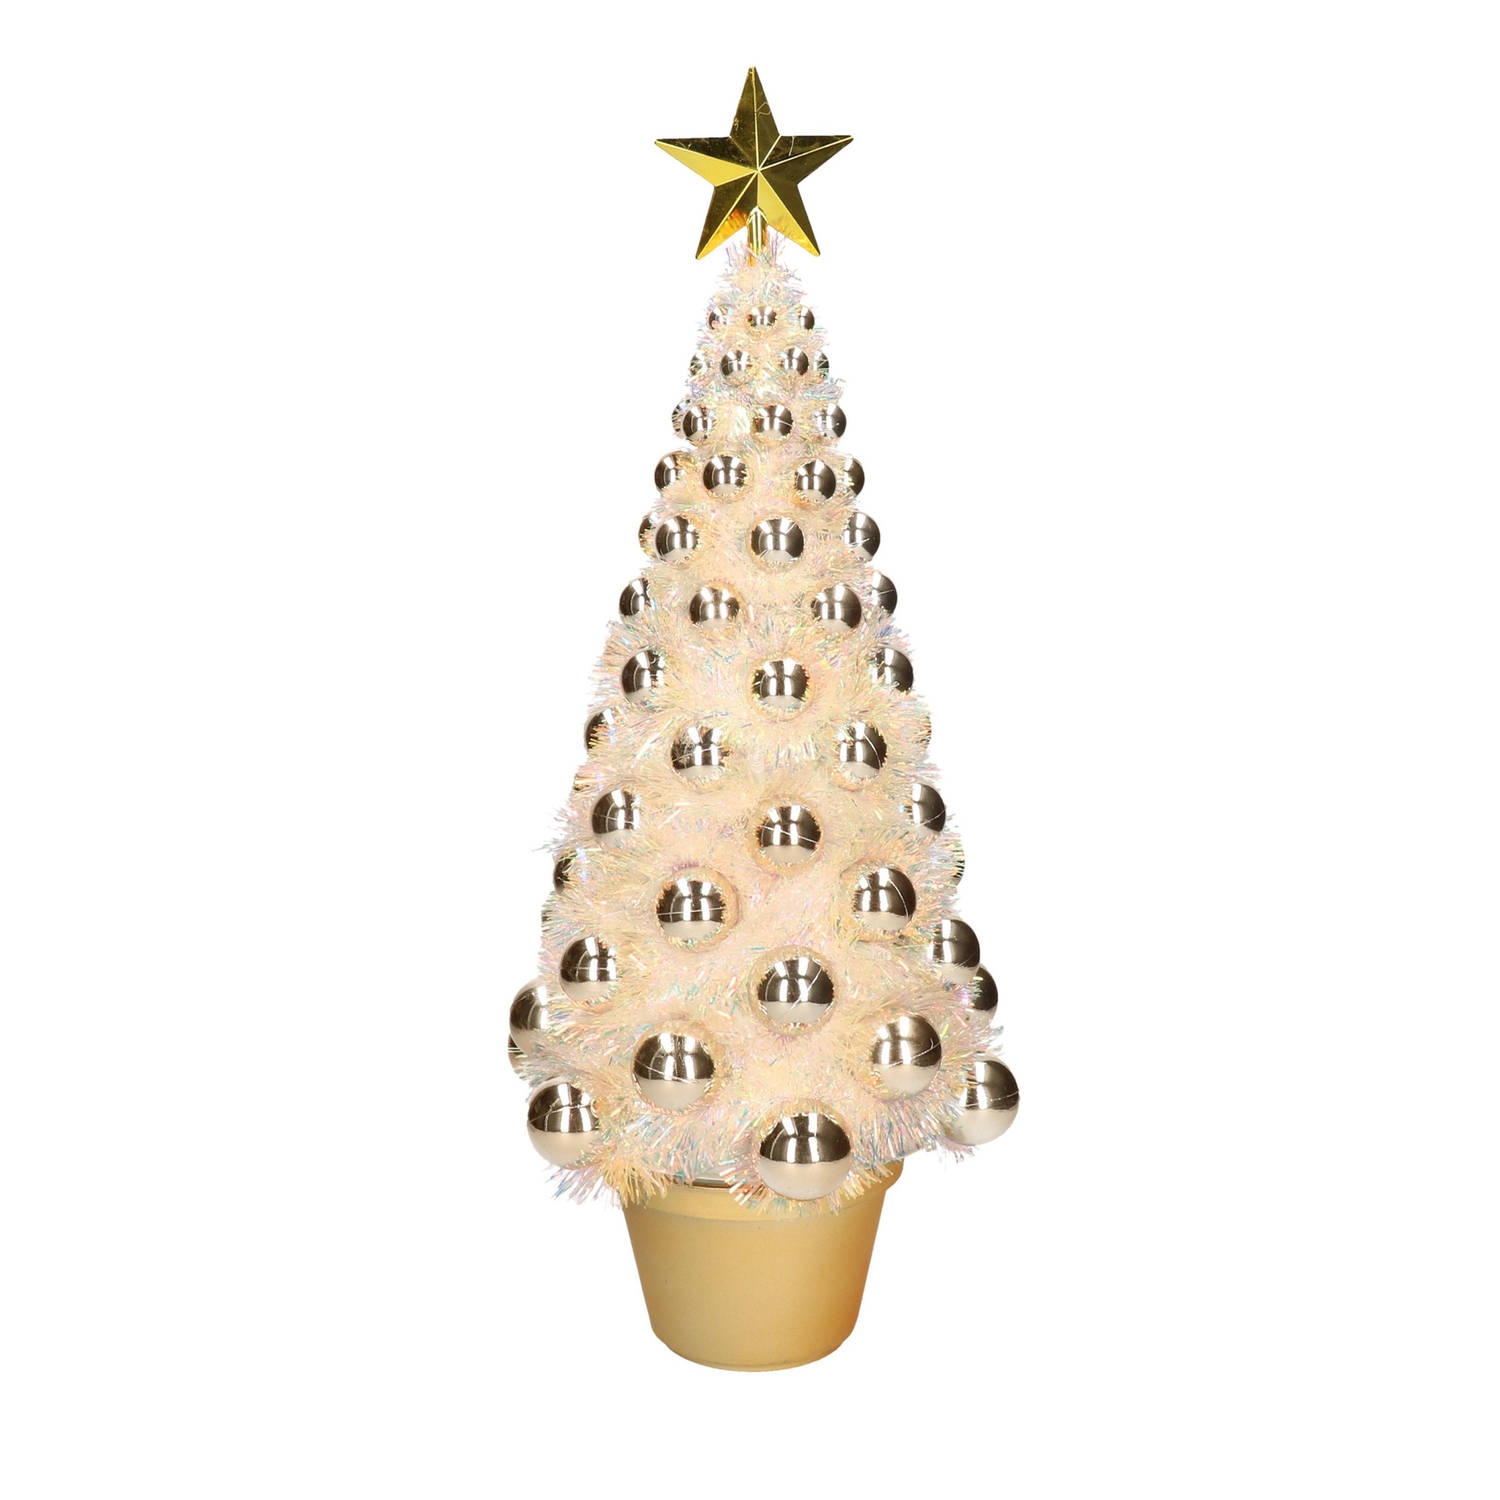 Complete mini kerstboom kunstboom goud met lichtjes 50 cm - | Blokker